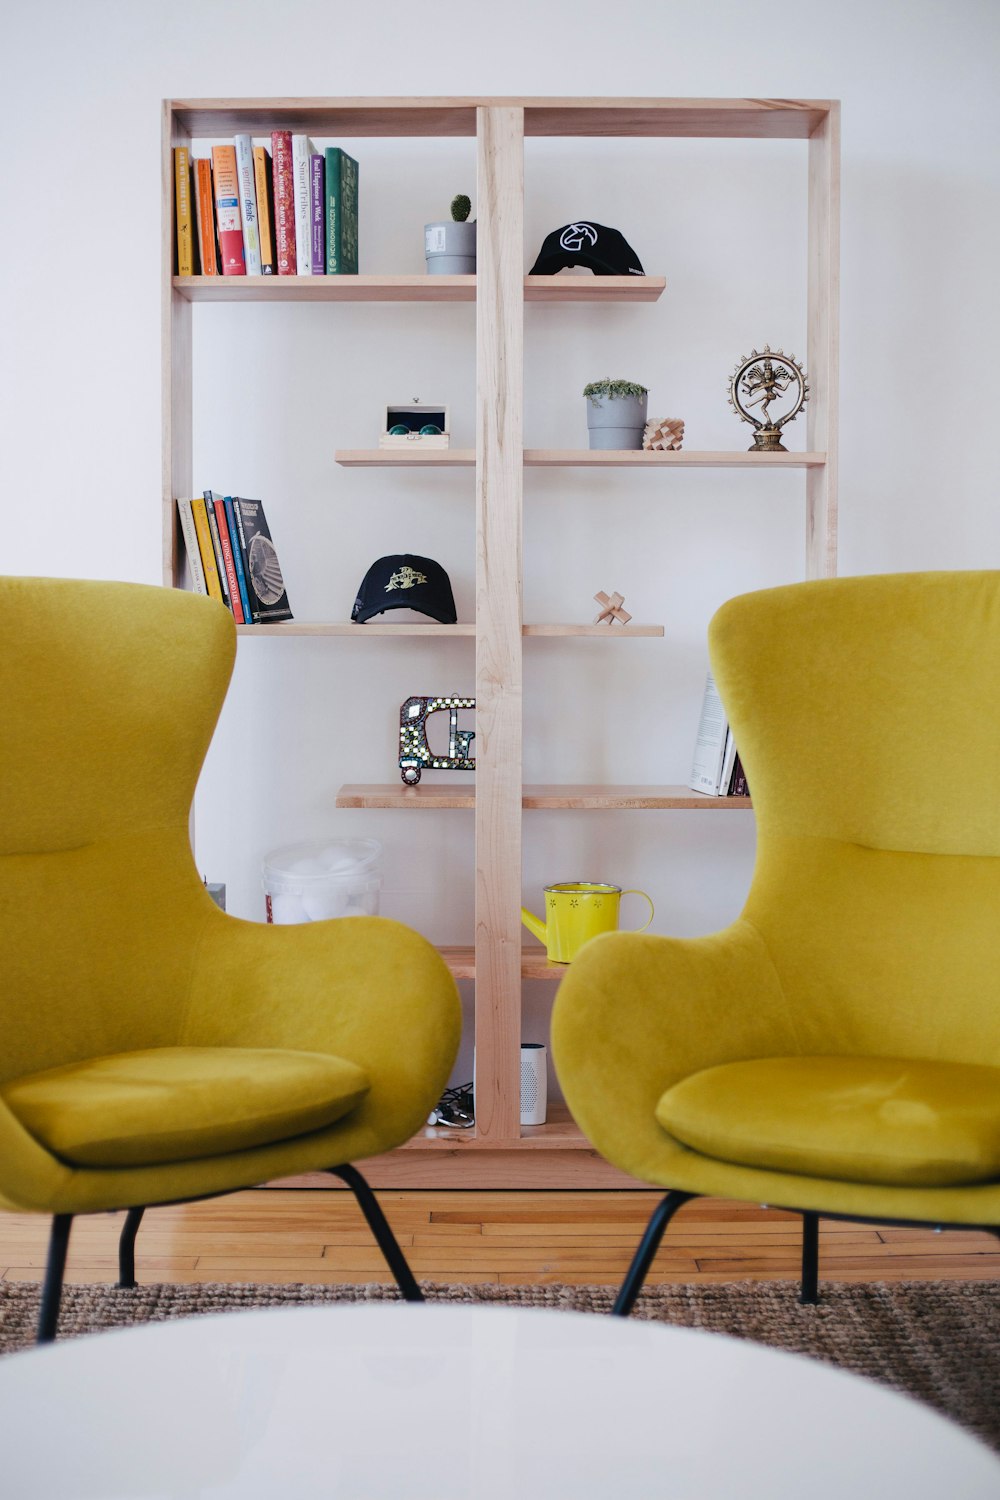 Zwei gelbe Stühle in der Nähe des braunen Regals